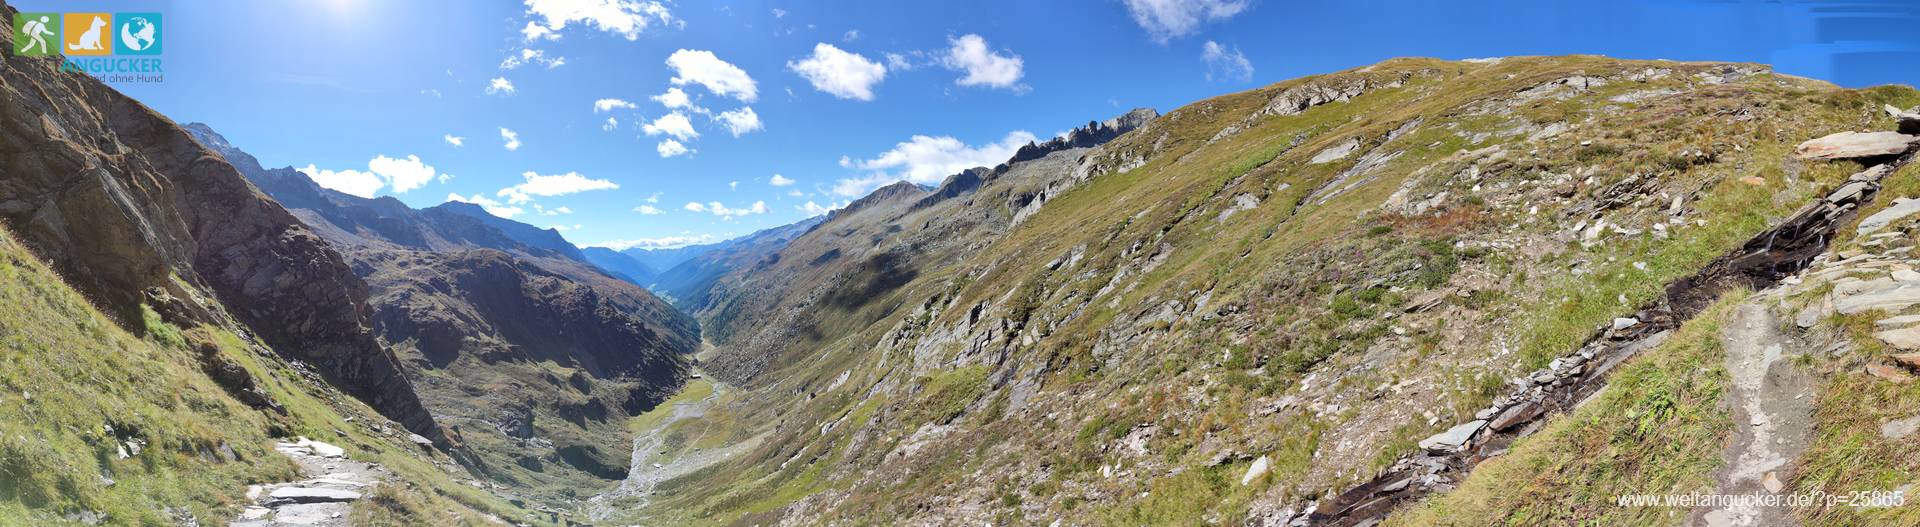 Kasern: Panoramablick vom Aufstieg zur Birnlückenhütte über den Naturpark Rieserferner-Ahrn